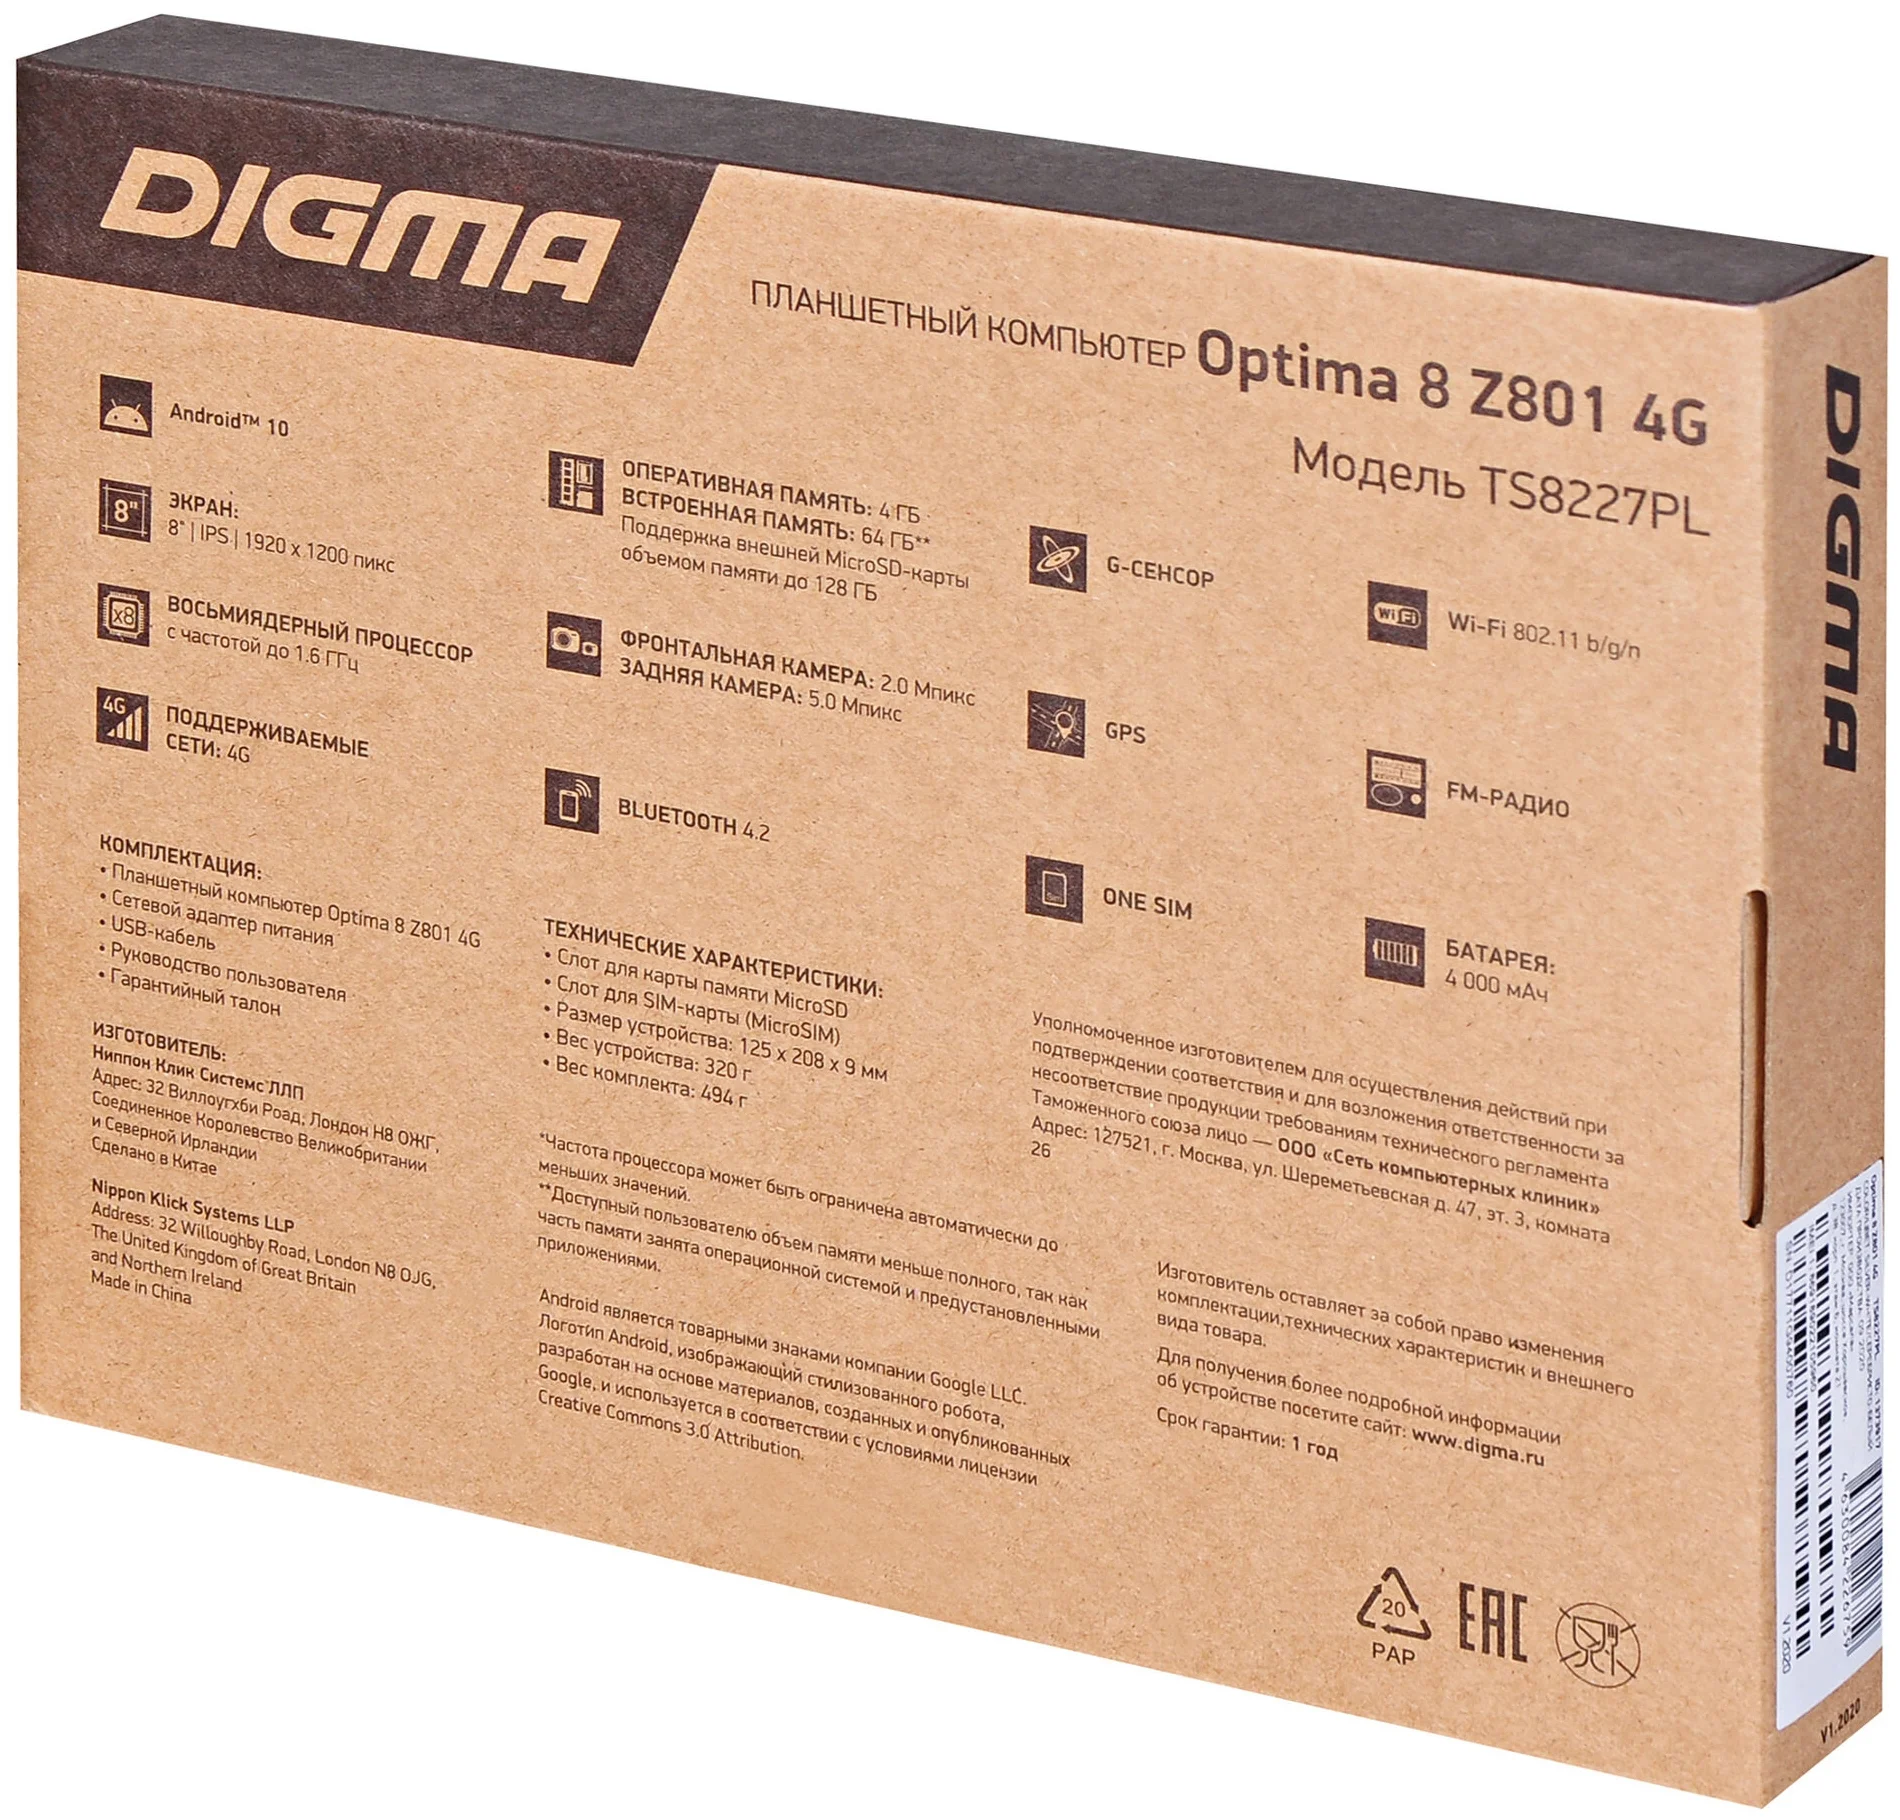 DIGMA Optima 8 Z801 4G - емкость аккумулятора: 4000 мА·ч